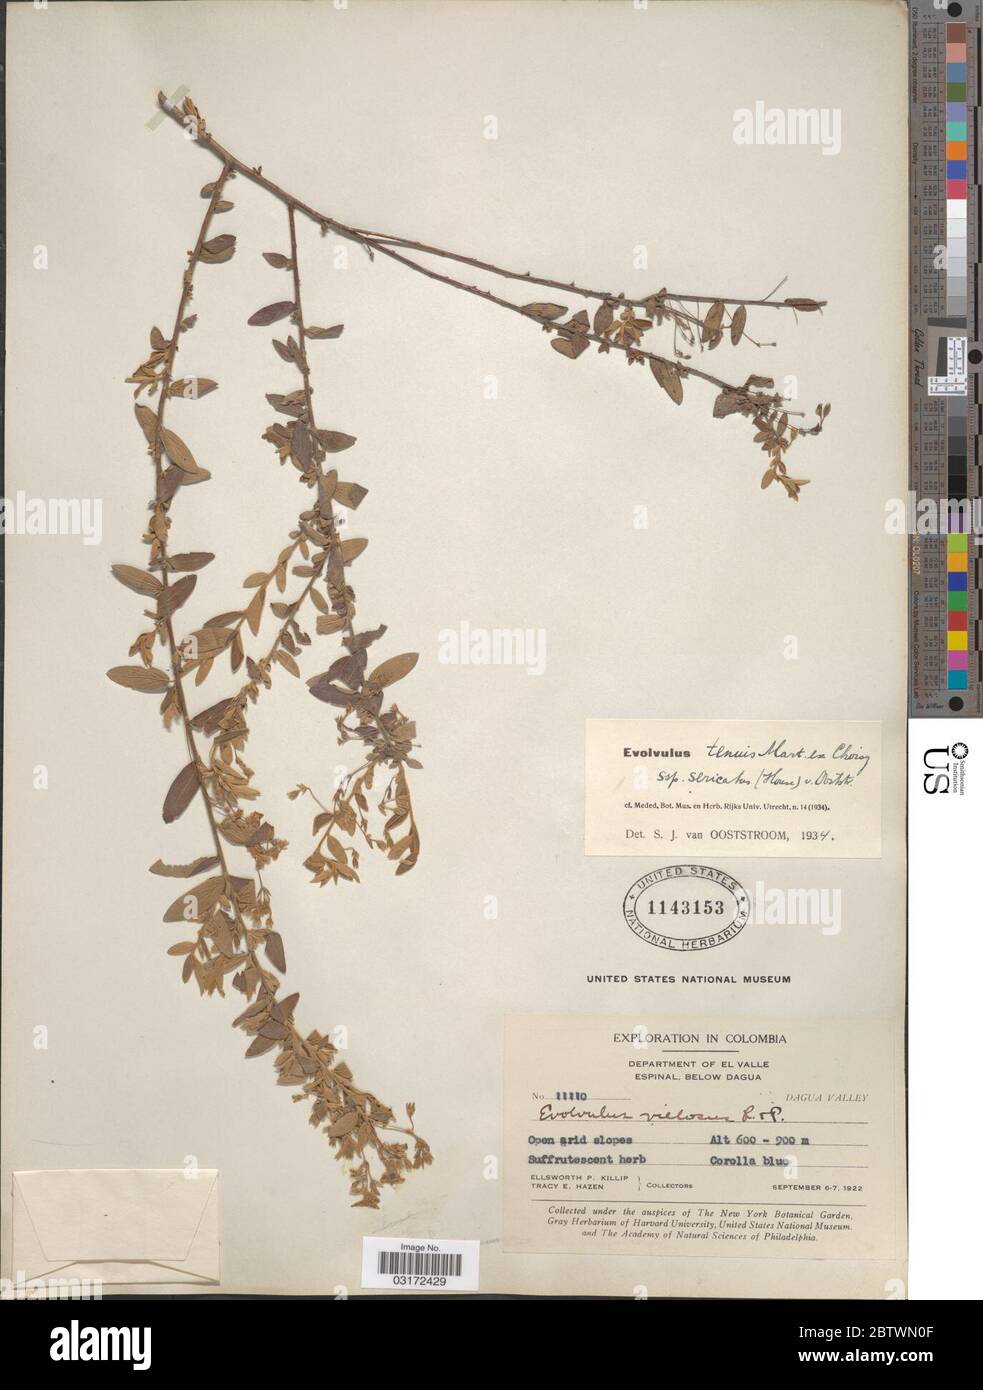 Evolvulus tenuis subsp sericatus. Stock Photo